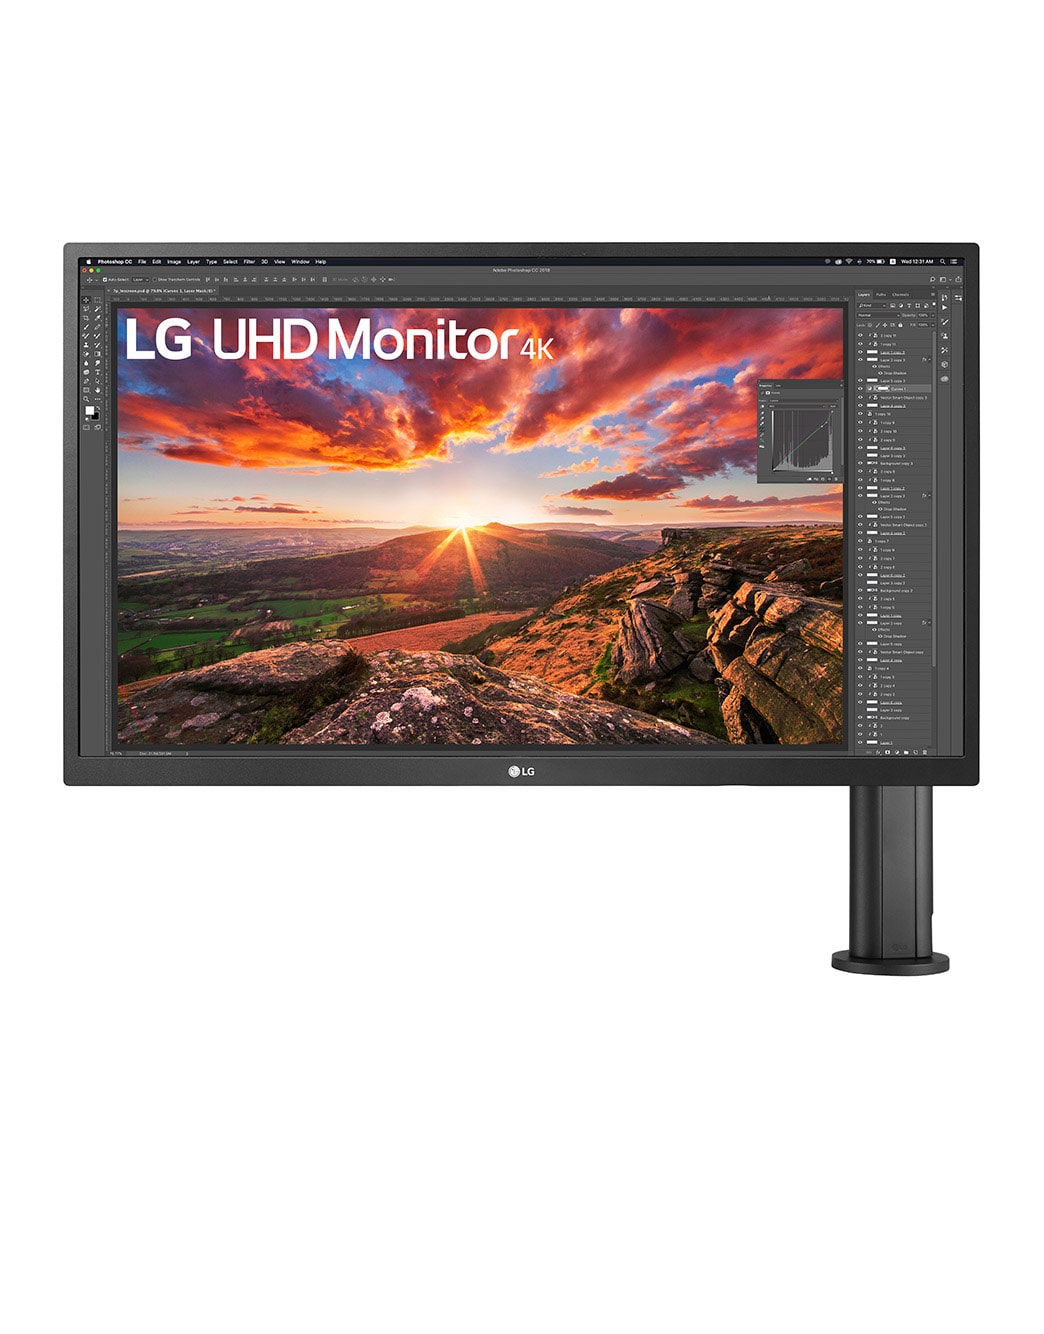 LG 27UK580-B - Monitor 4K UHD LG Ergo™ (Panel IPS: 3840 x 2160p 